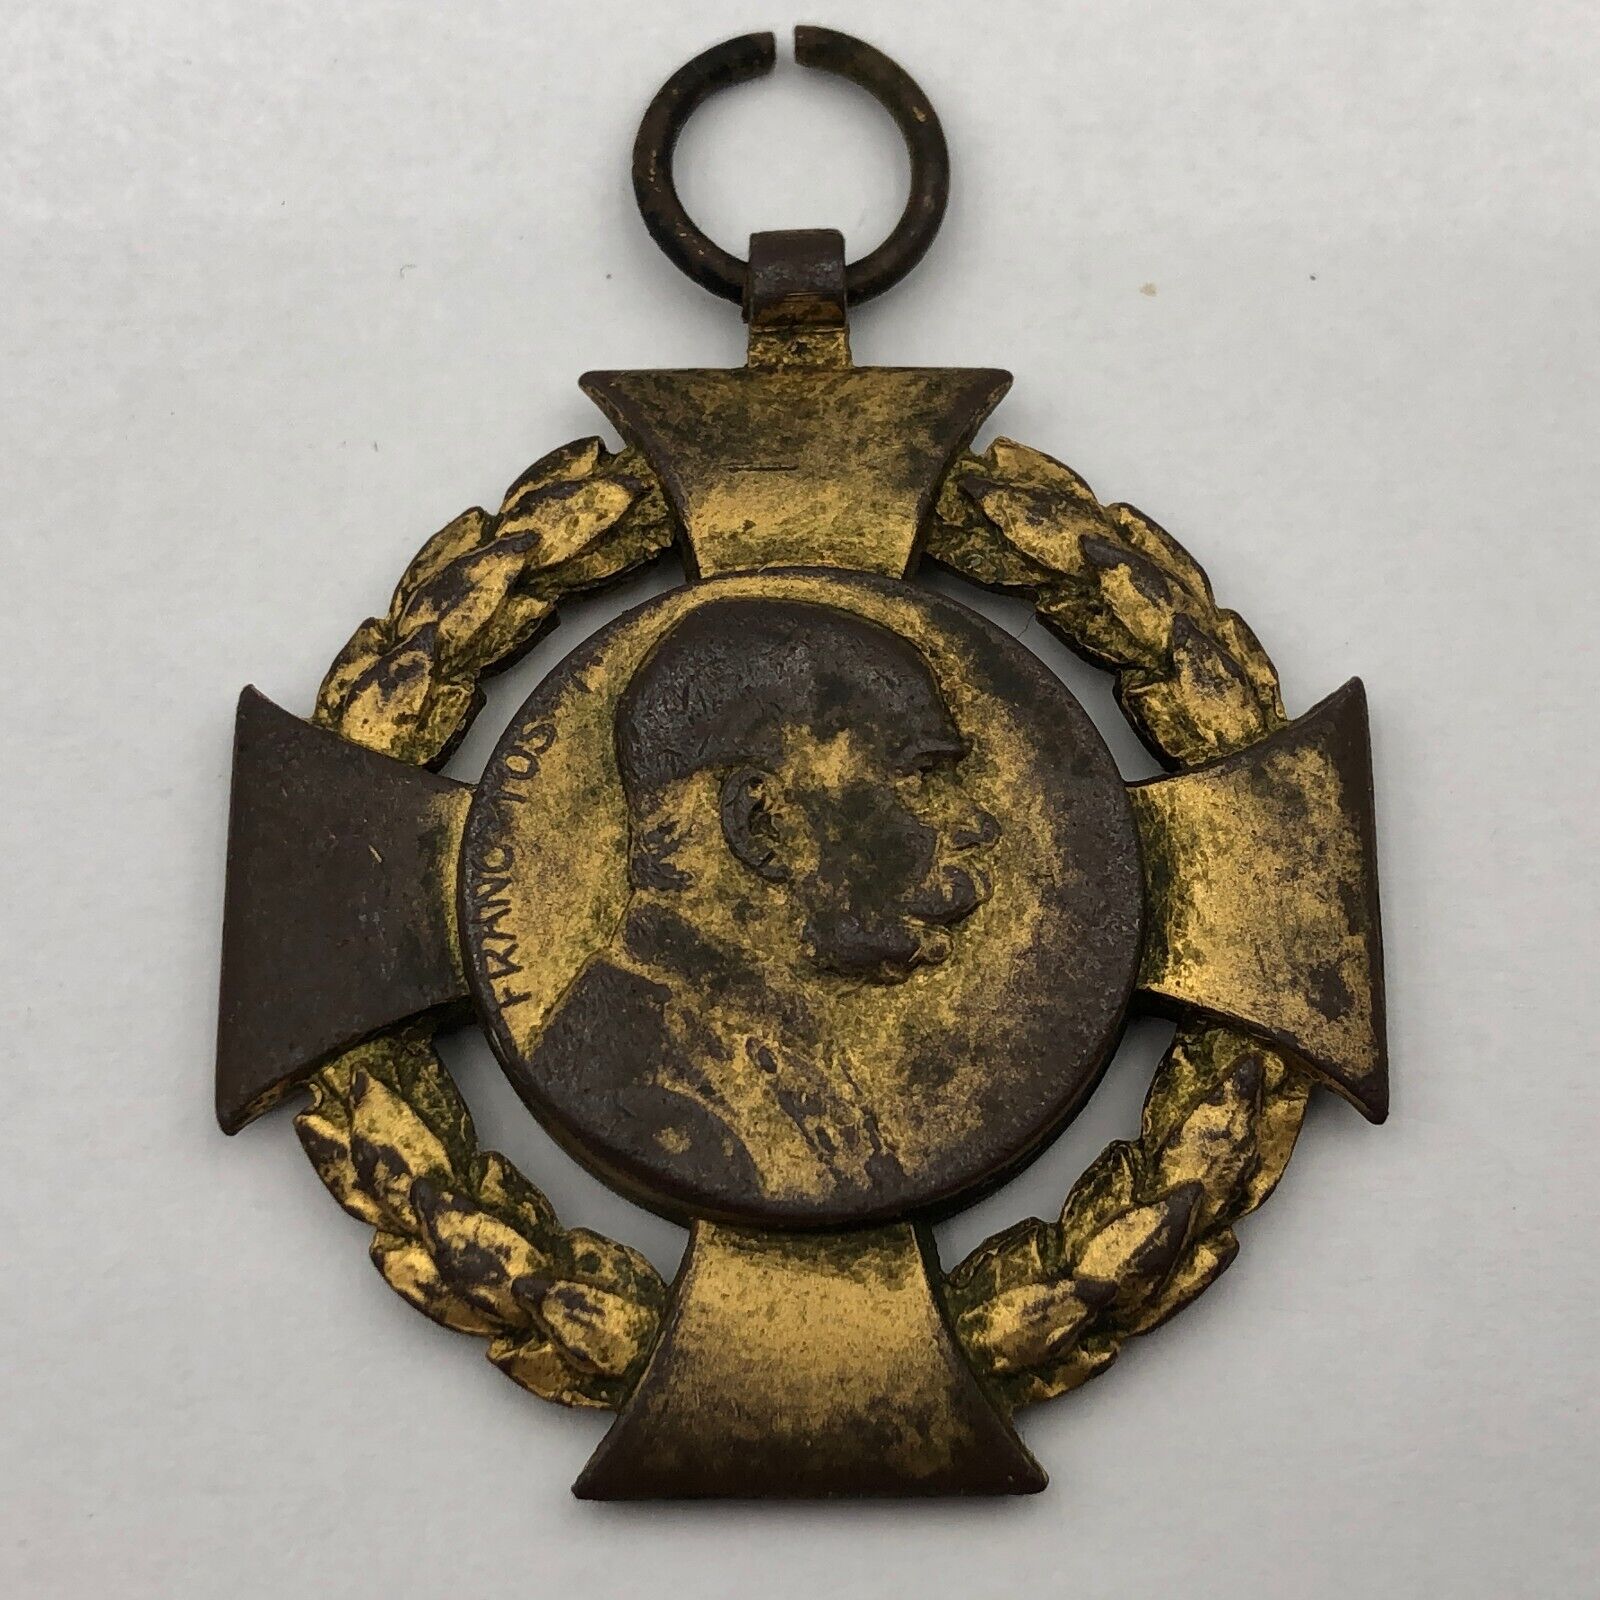 Original Austria - Hungary Medal FJI 1848 - 1908